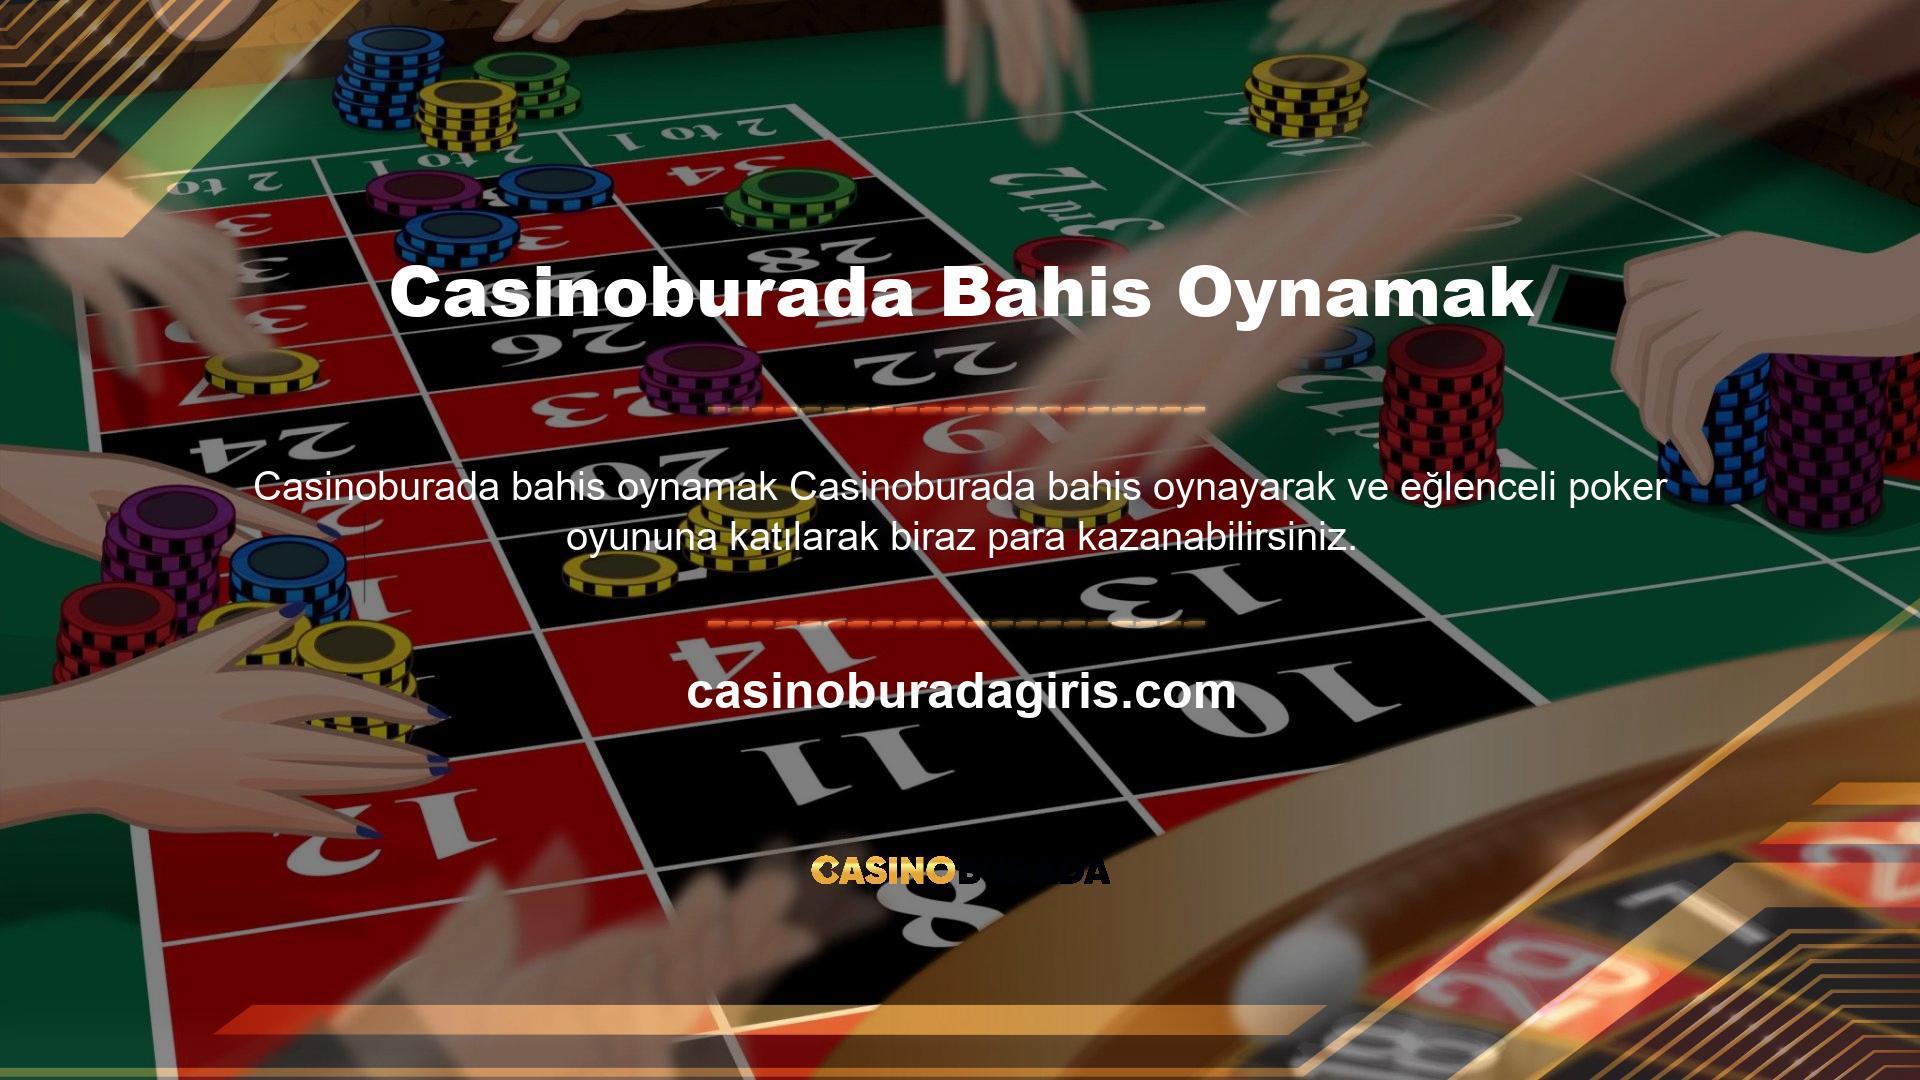 Casinoburada bahis sitesi, oyuncularını bilgilendirmek amacıyla çoğu oyuna ücretsiz erişim sunmaktadır